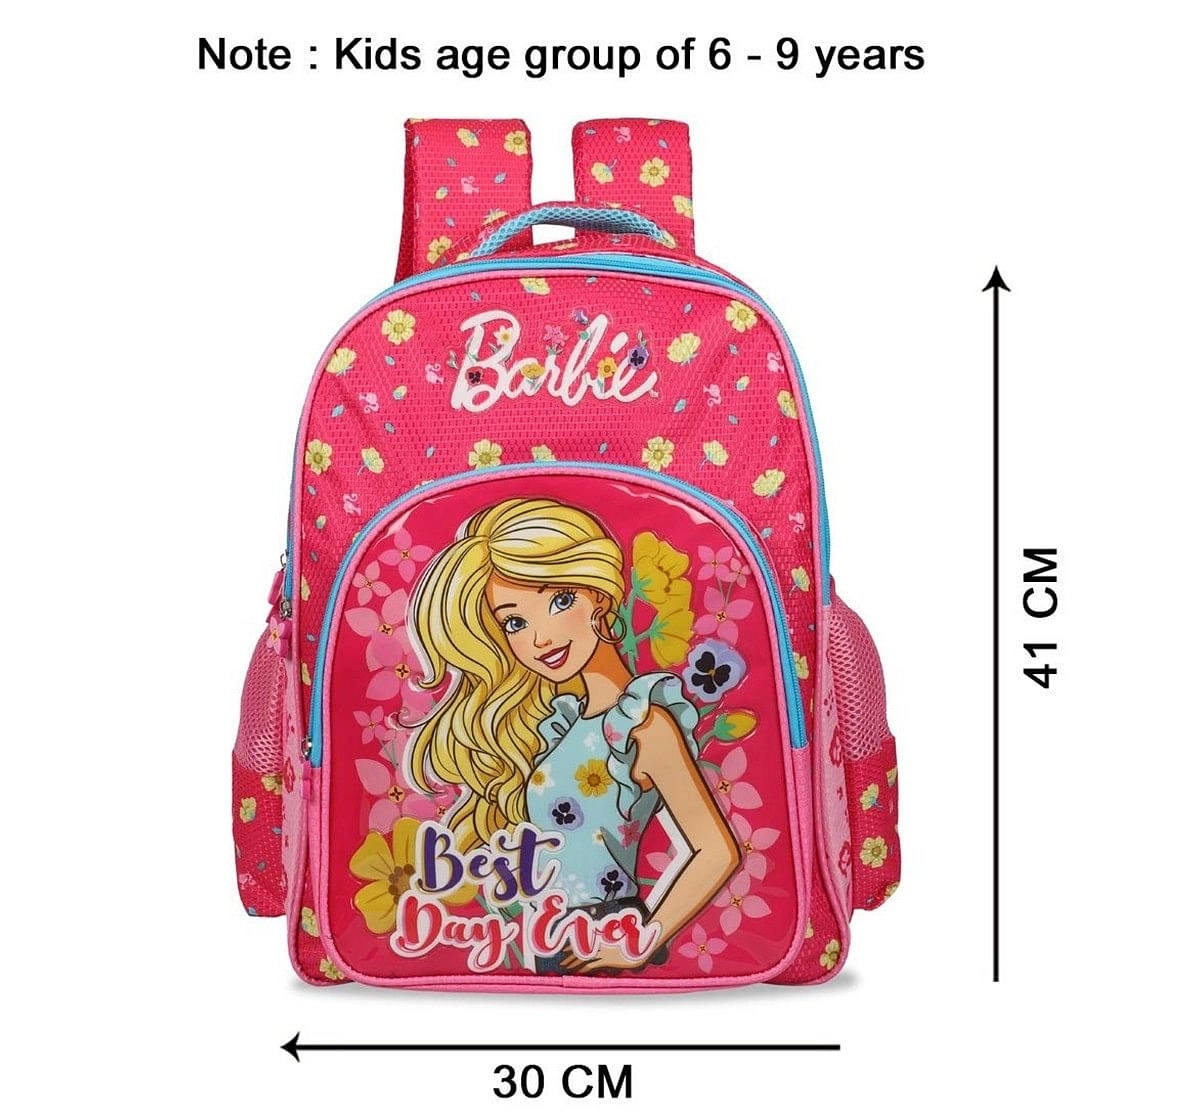 BARBIE BAGS 16 INCH FLIPTOP SCHOOL BACKPACK WITH FREEBIES FOR KIDS |  Cartoon Kingdom PH